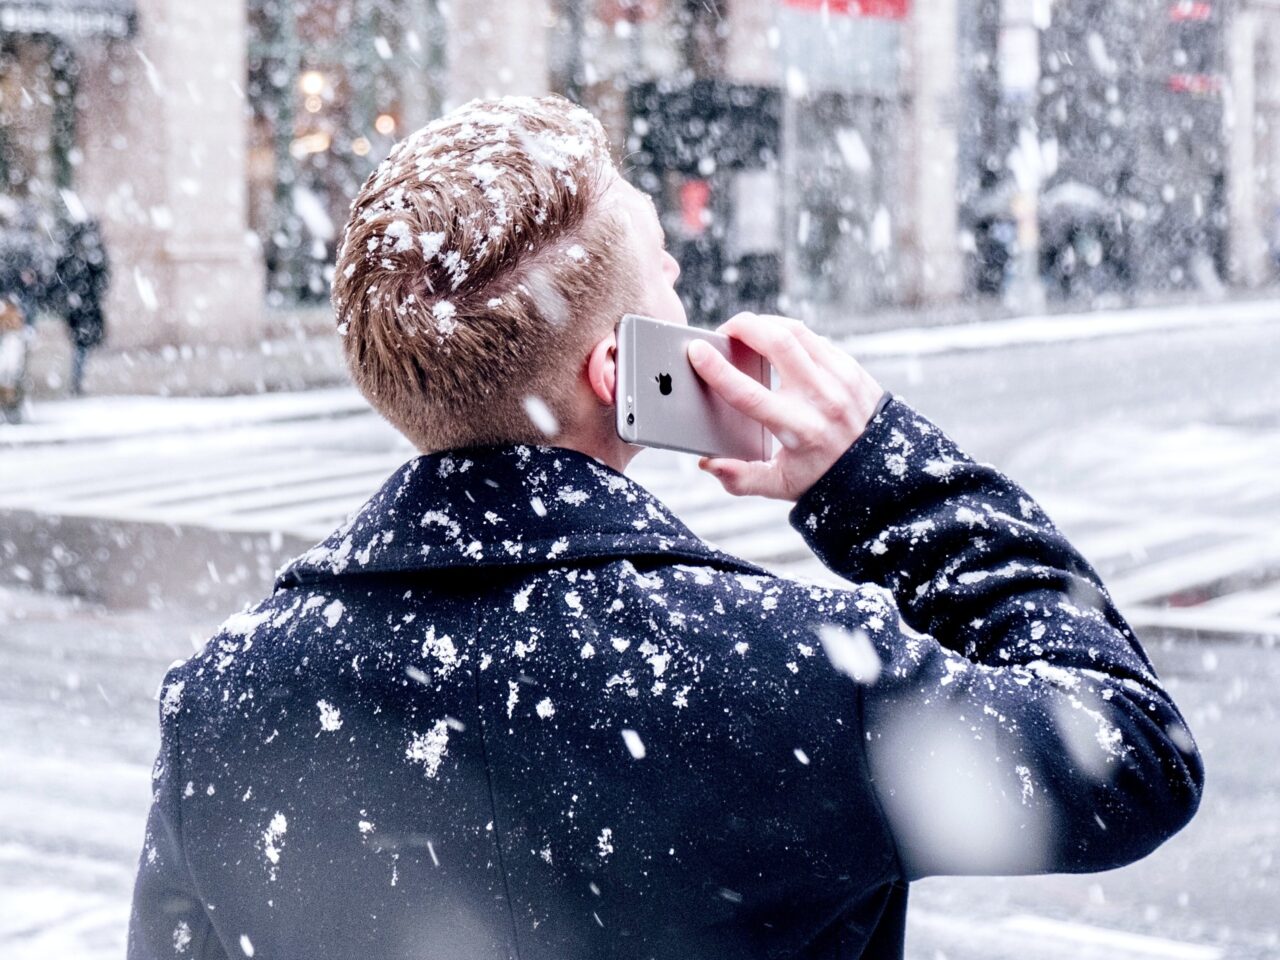 telefon Apple iPhone trzymany przez mężczyznę, prowadzi rozmowę telefoniczną na dworze, pada śnieg